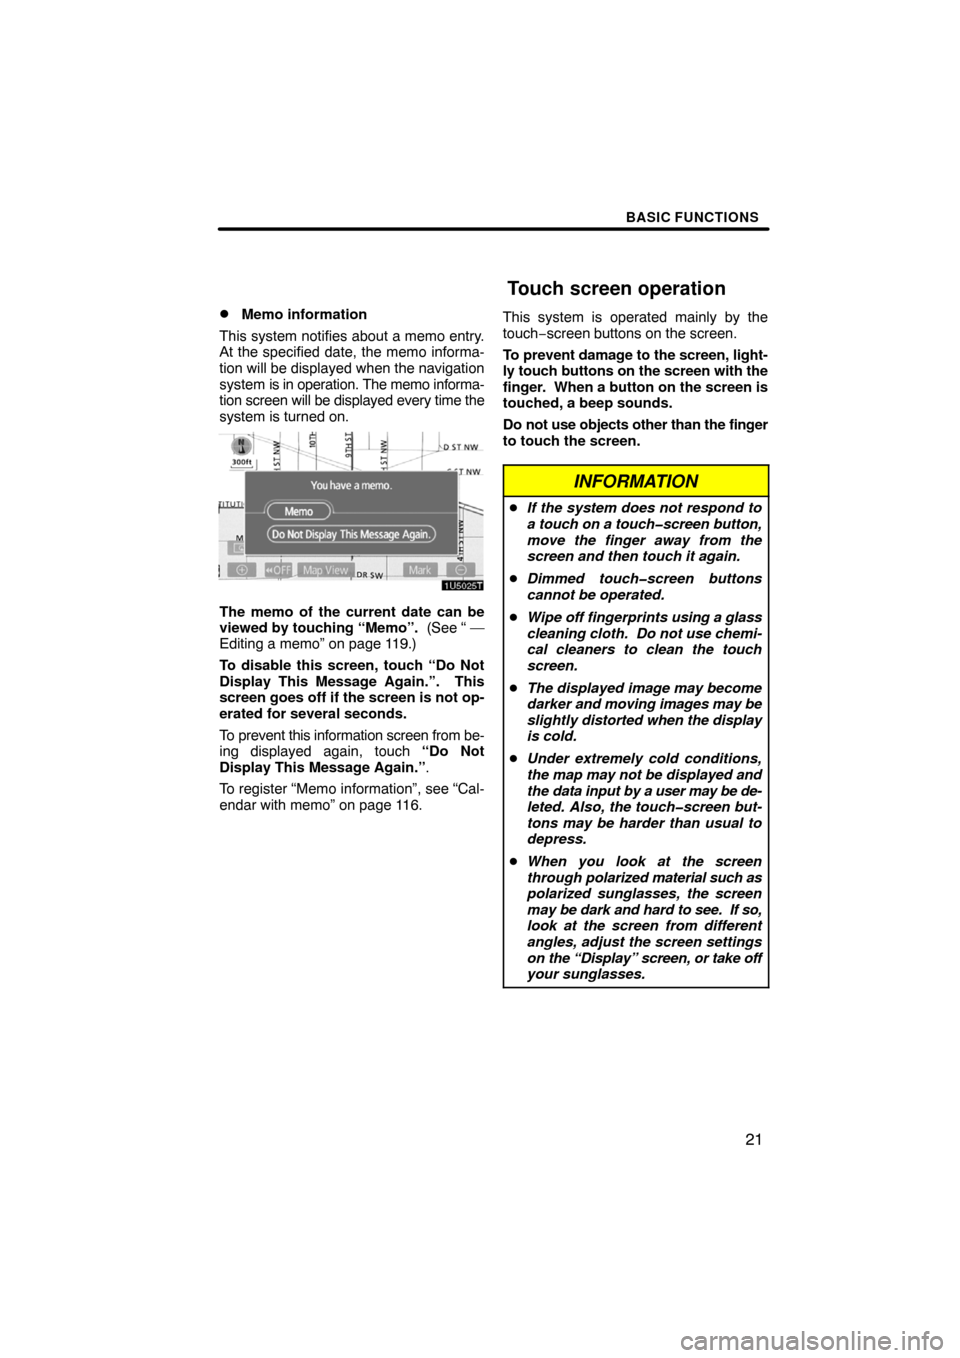 TOYOTA PRIUS 2008 2.G Navigation Manual BASIC FUNCTIONS
21 
Memo information
This system notifies about a memo entry.
At the specified date, the memo informa-
tion will be displayed when the navigation
system is in operation. The memo info